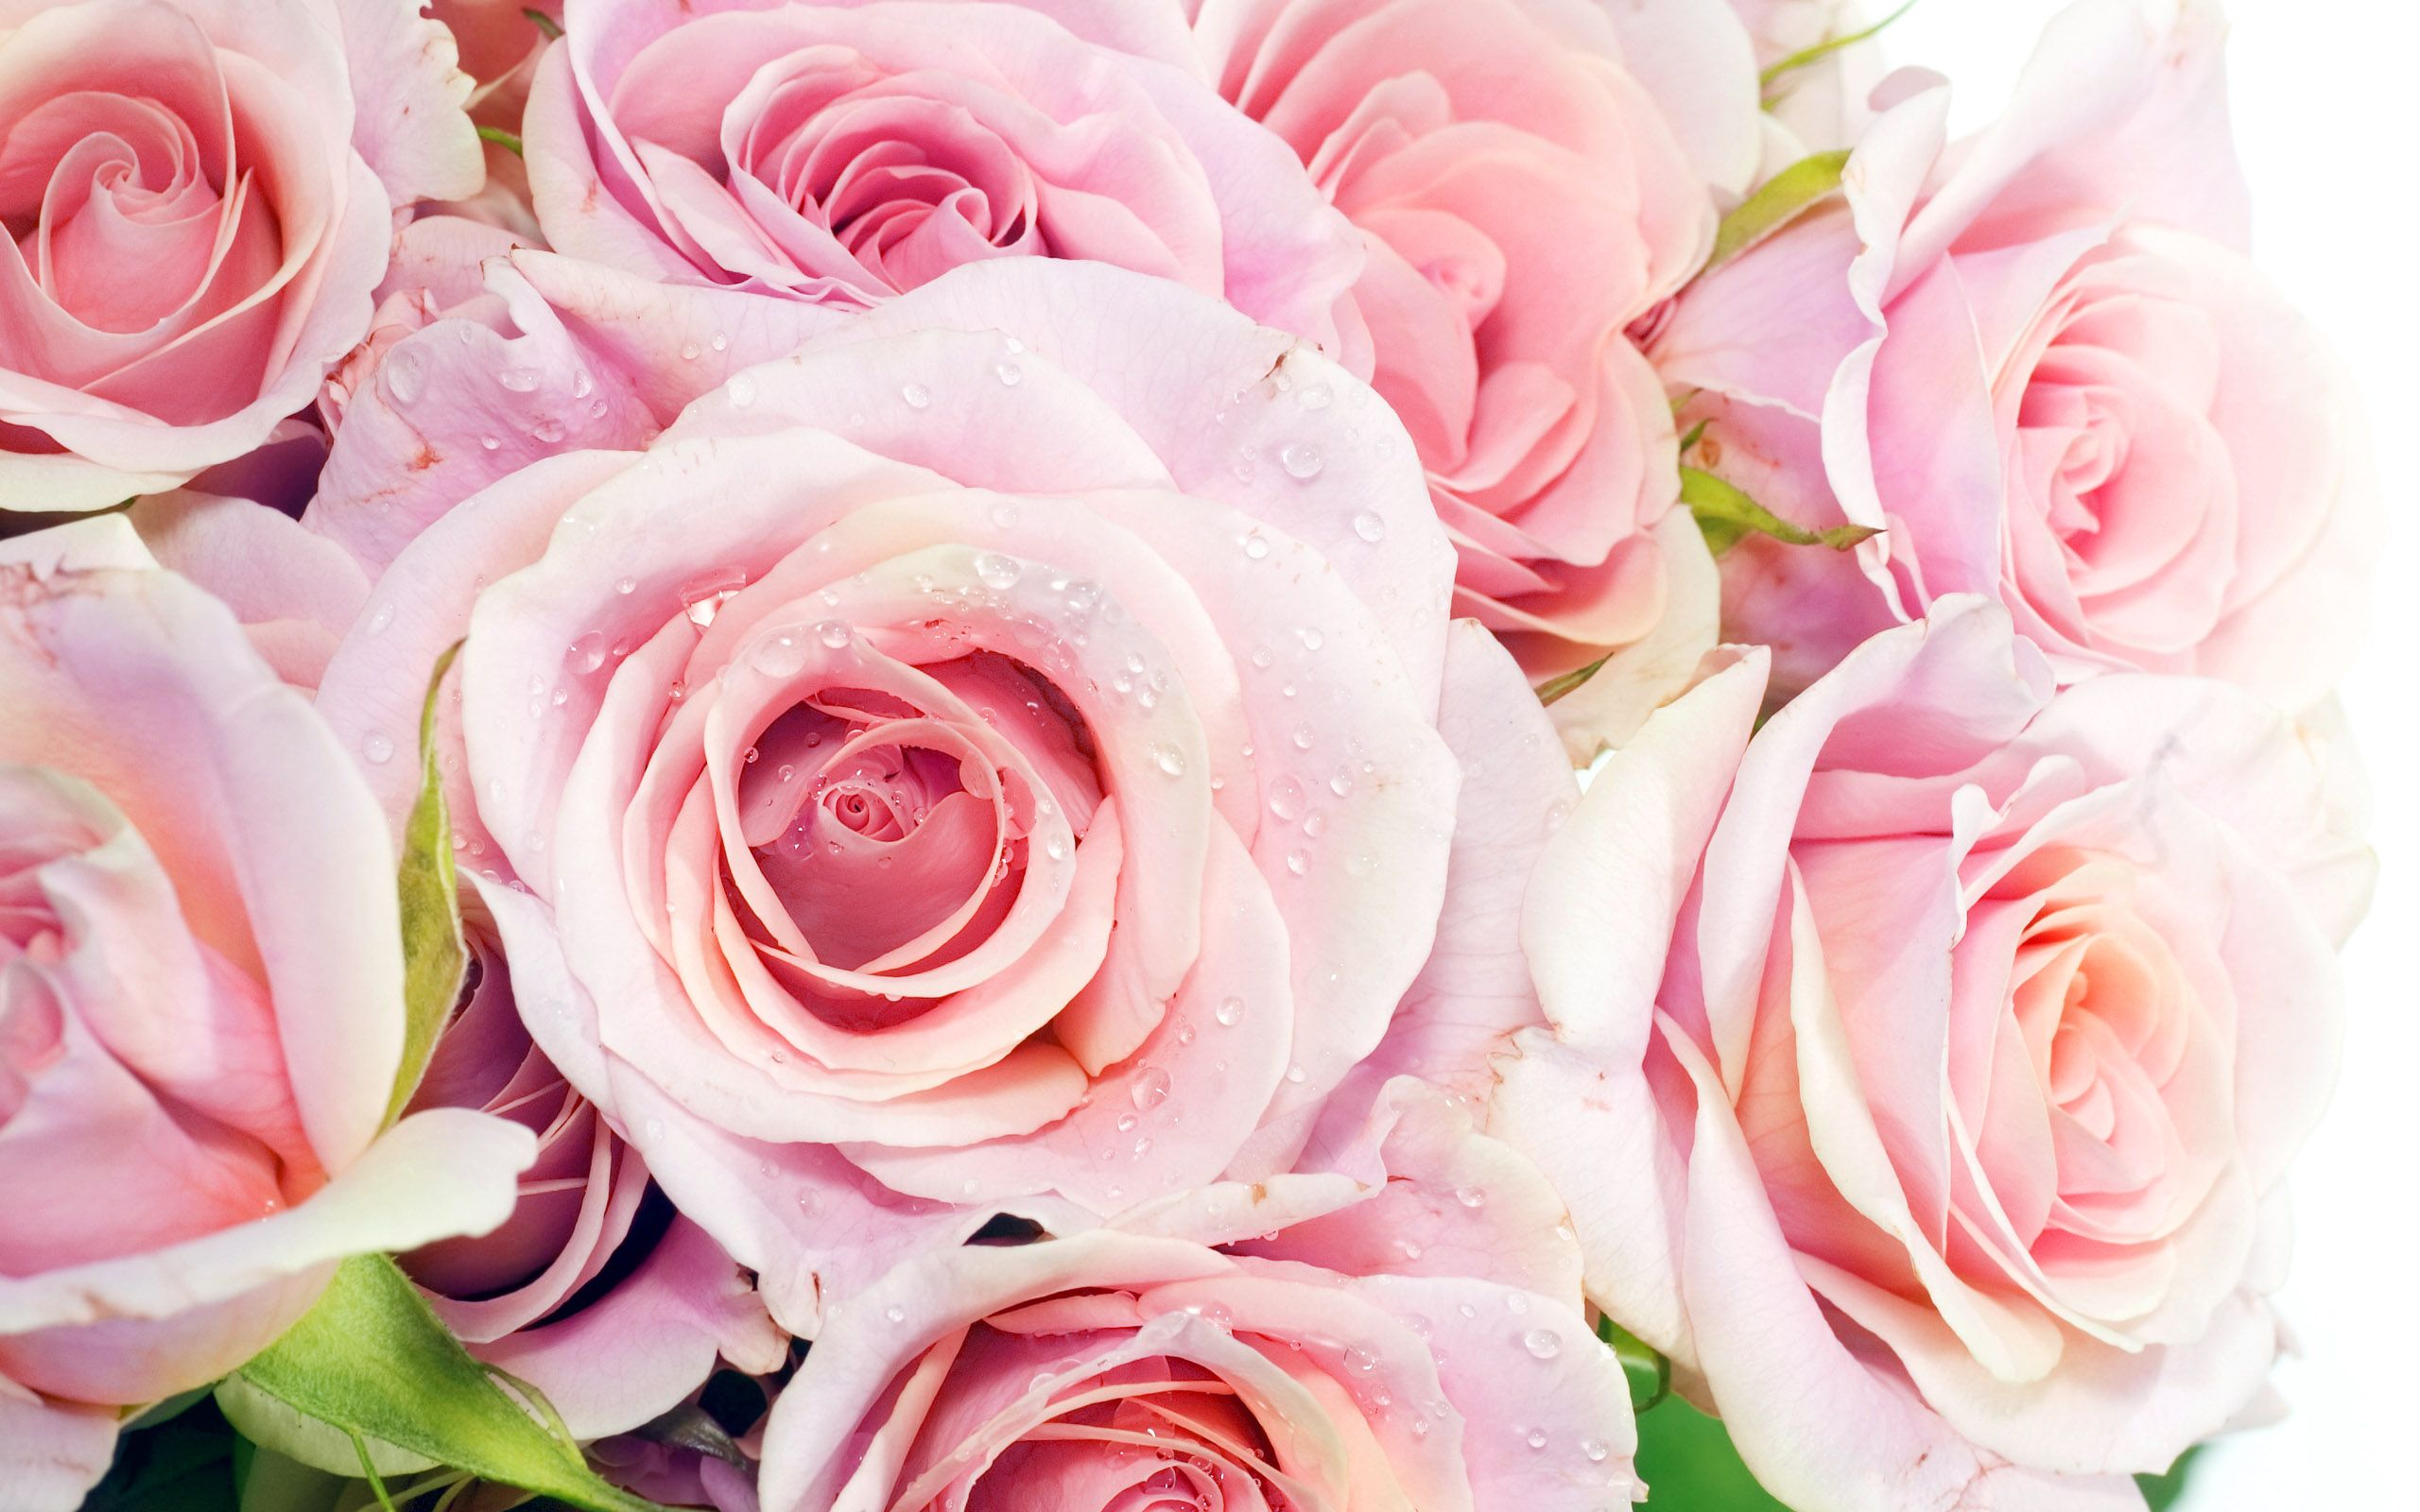 パルサー220 hd壁紙1080p,花,ローズ,庭のバラ,開花植物,ピンク